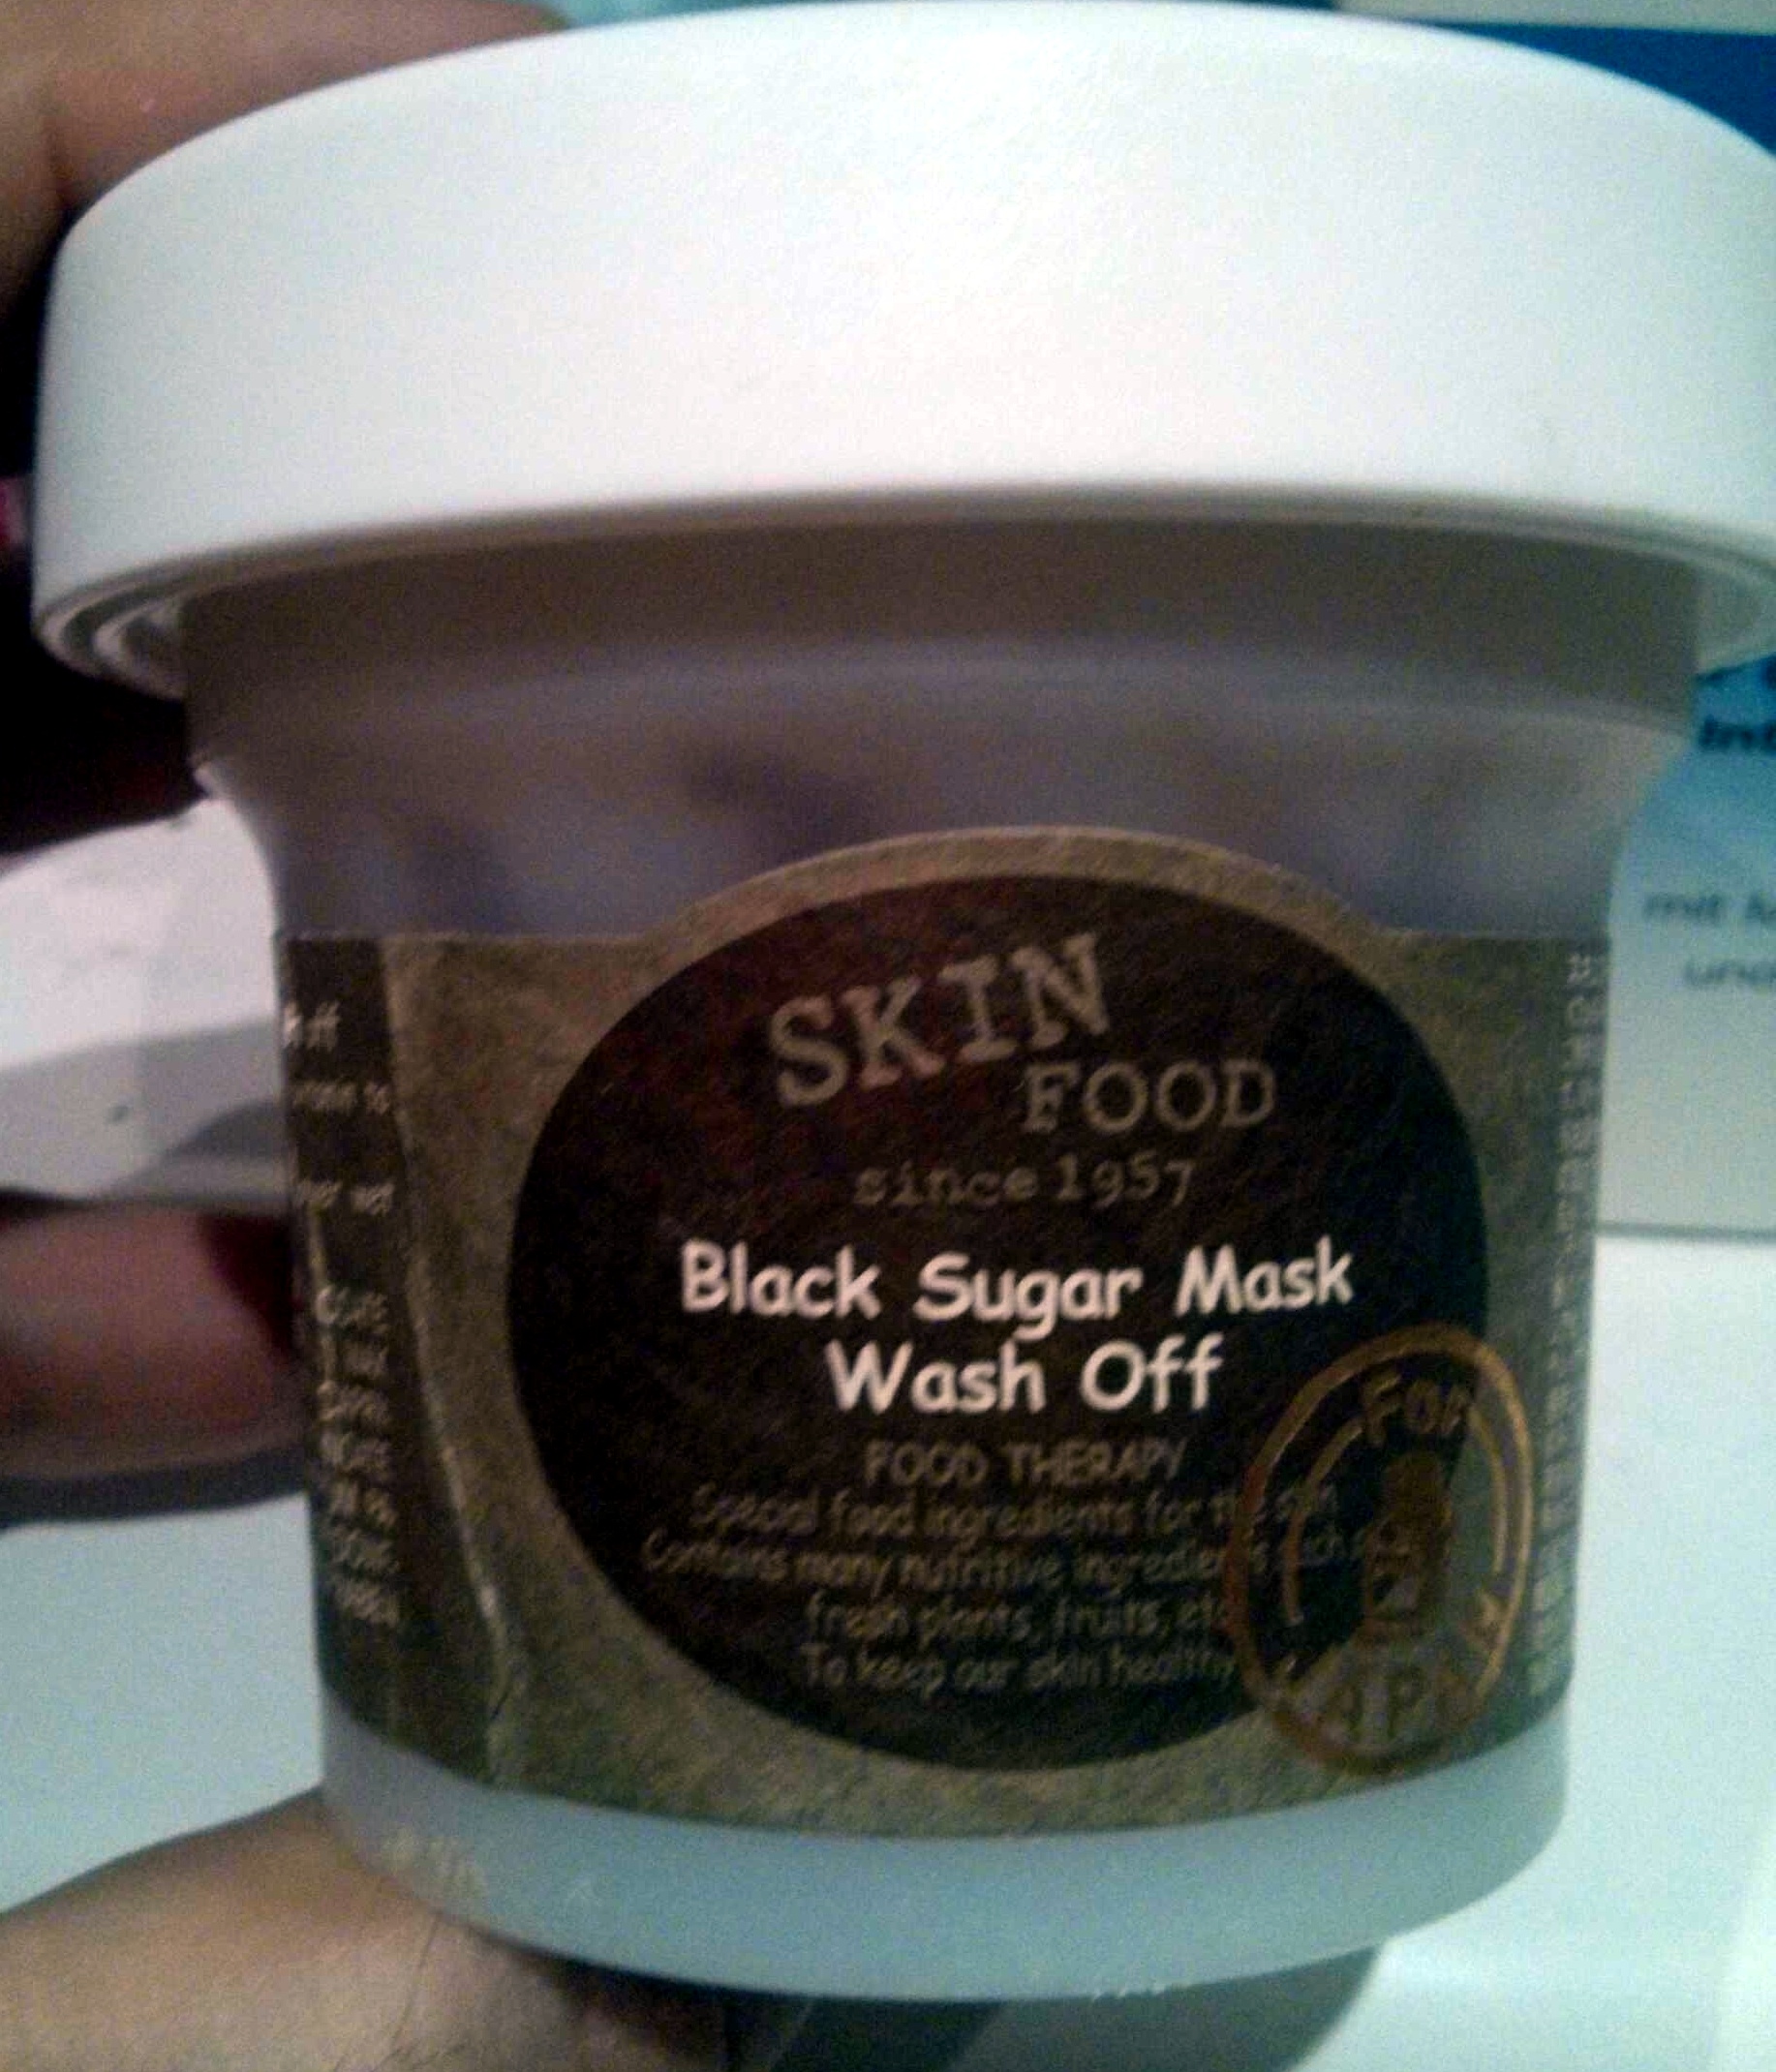 Black sugar mask wash off - Product - en